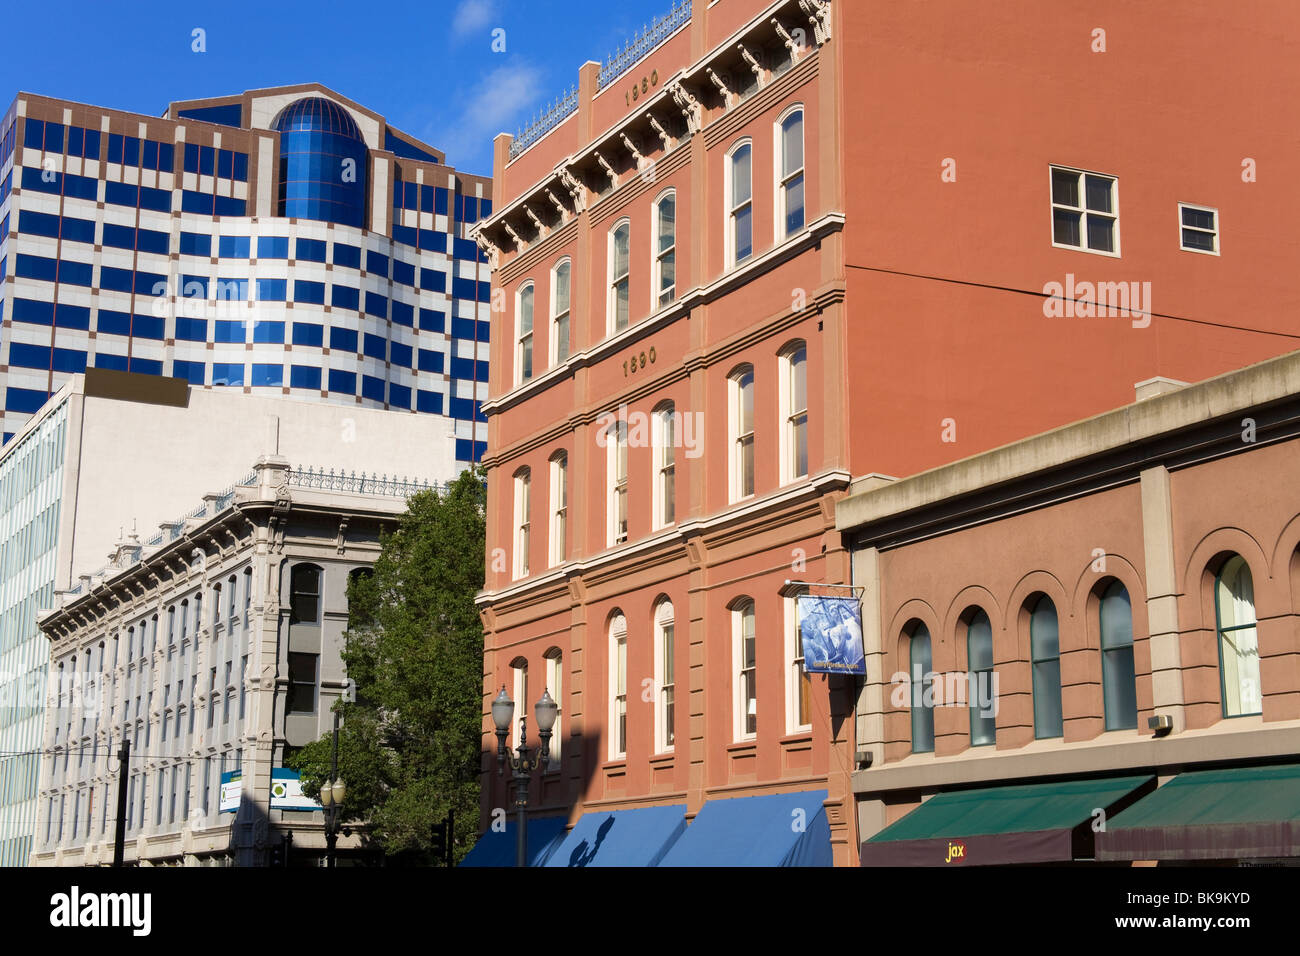 Edificios en una ciudad, SW 2nd Avenue, Waterfront District, Portland, Oregón, EE.UU. Foto de stock